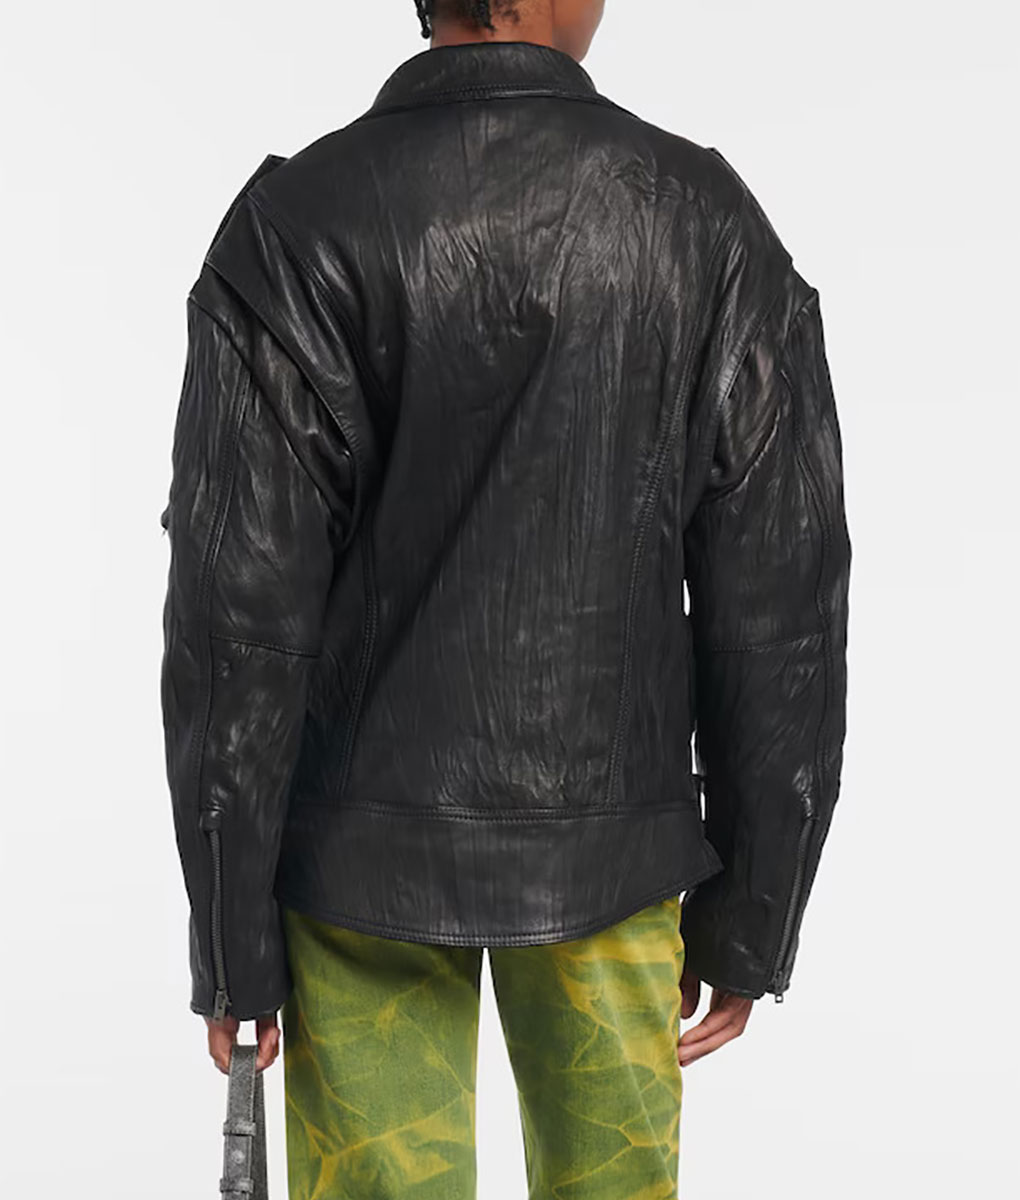 Megan Fox Coachella Black Leather Jacket (1)